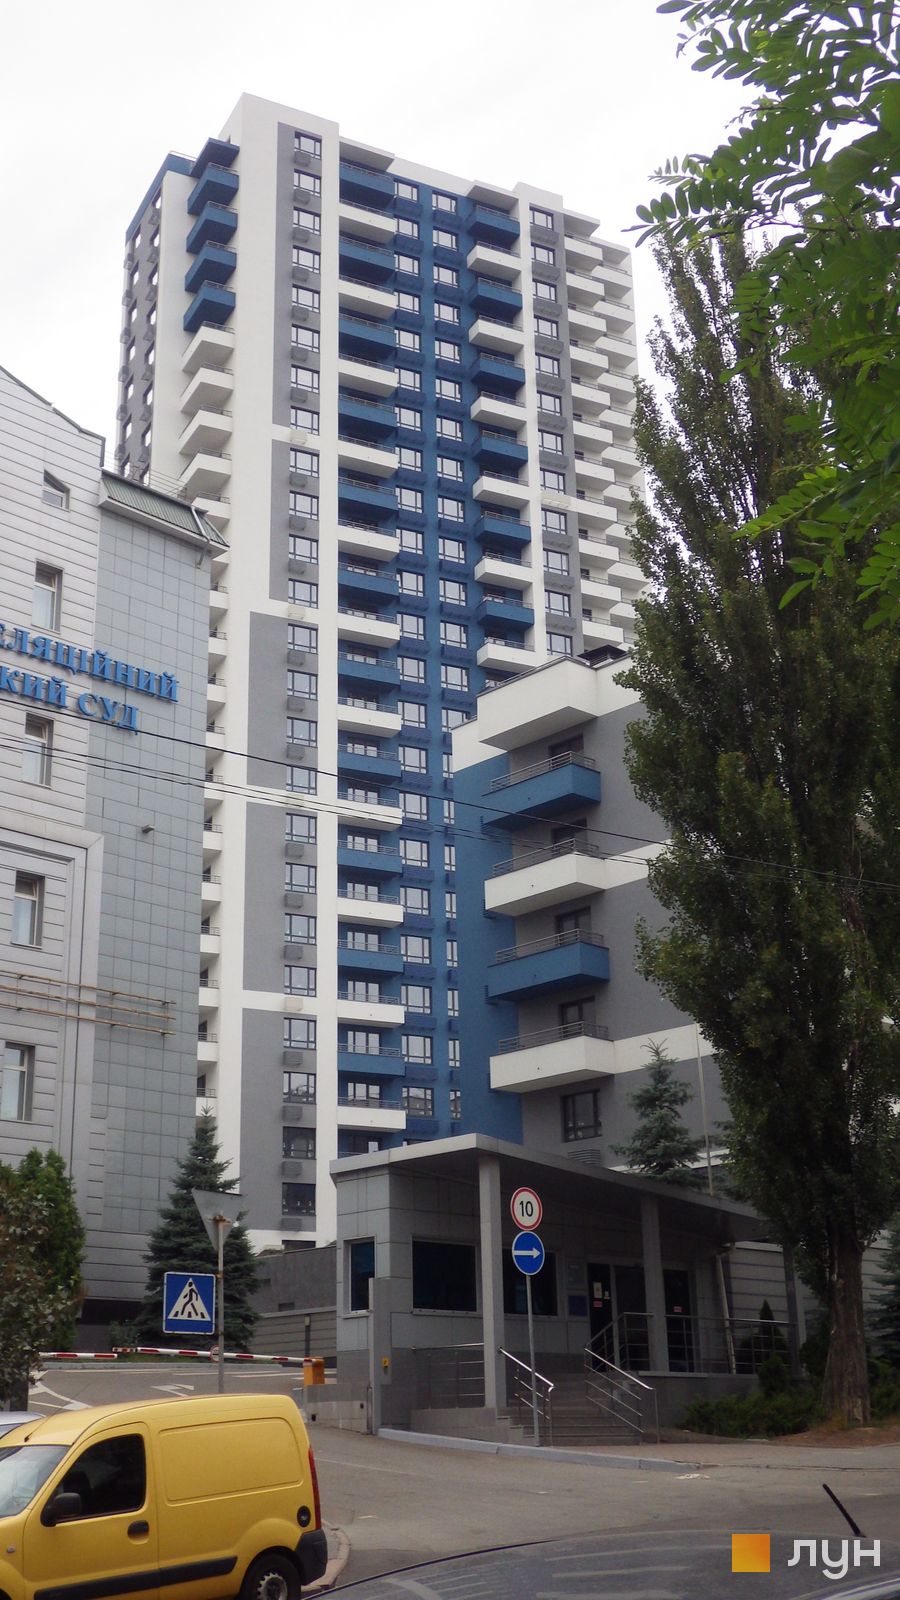 Моніторинг будівництва ЖК Воздухофлотський квартал - Ракурс 2, июнь 2018